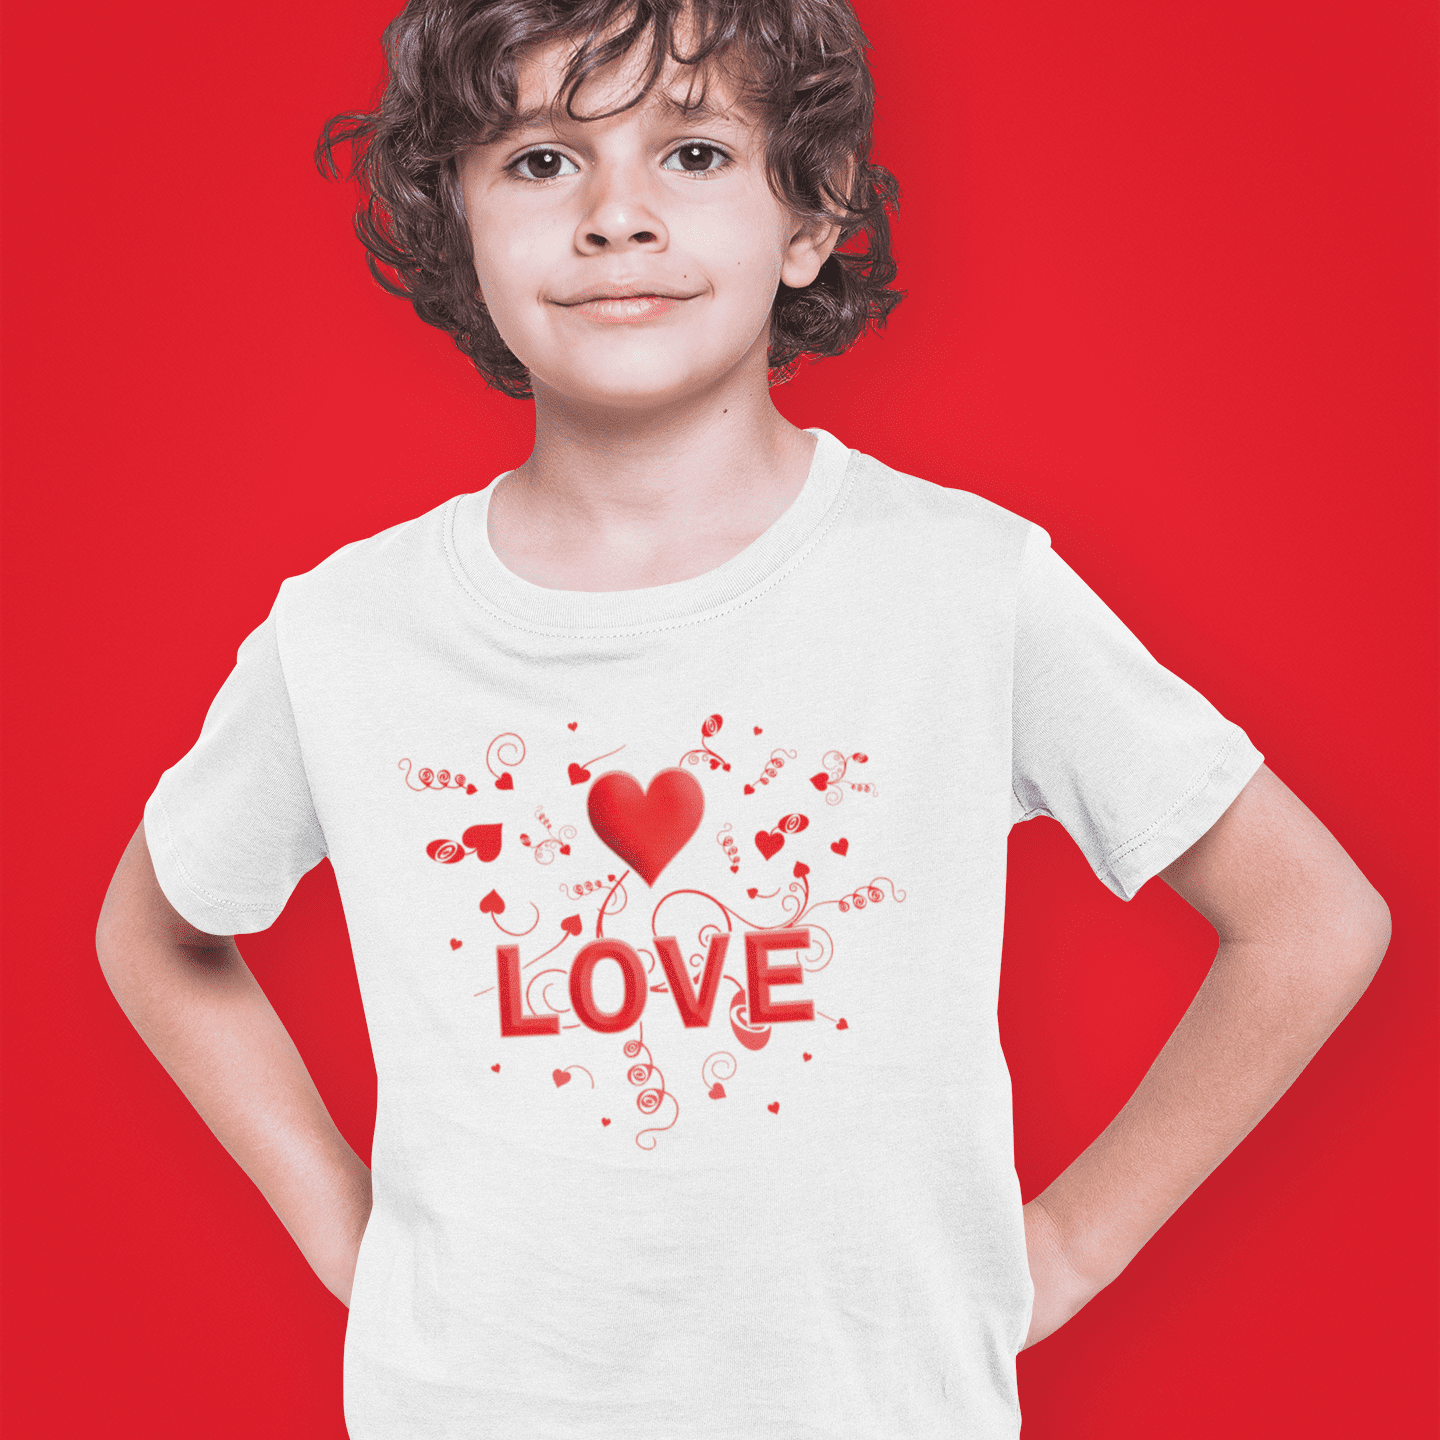 Valentine Valentine's Day  Shirt Kids Valentine's shirt Valentine's Gift Kid's Valentine's Shirt Youth LOVE Heart Valentine's Day Shirt